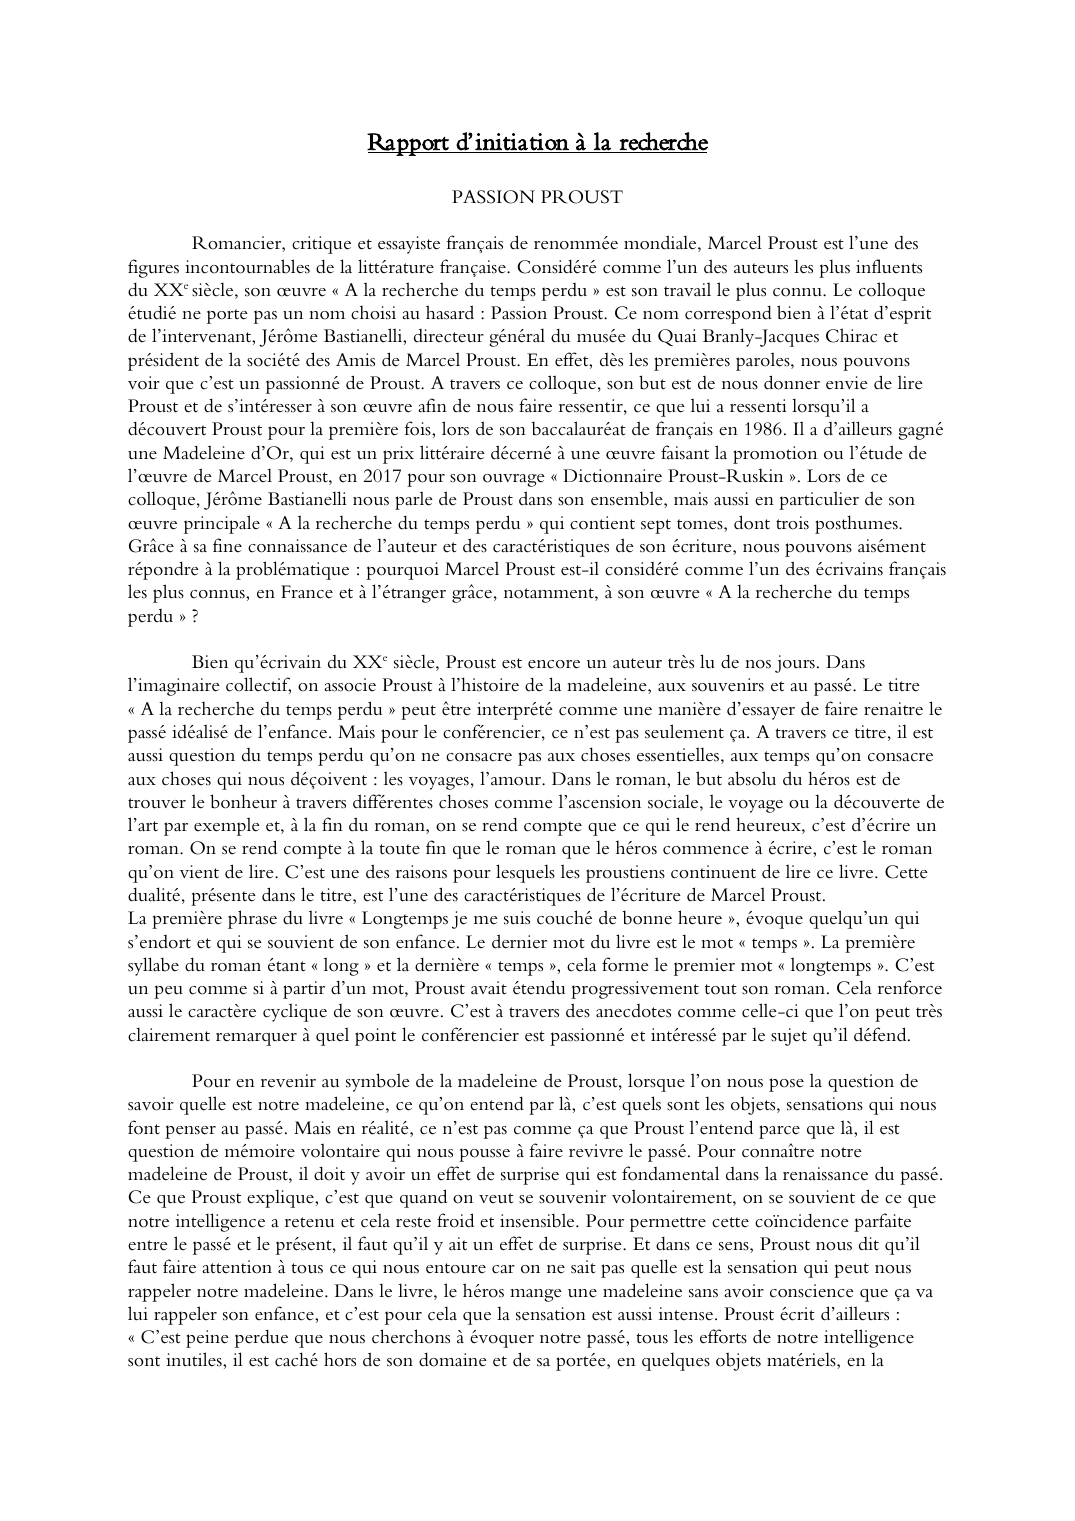 Prévisualisation du document Compte rendu d'une conférence sur Marcel Proust: Rapport d’initiation à la recherche -  PASSION PROUST